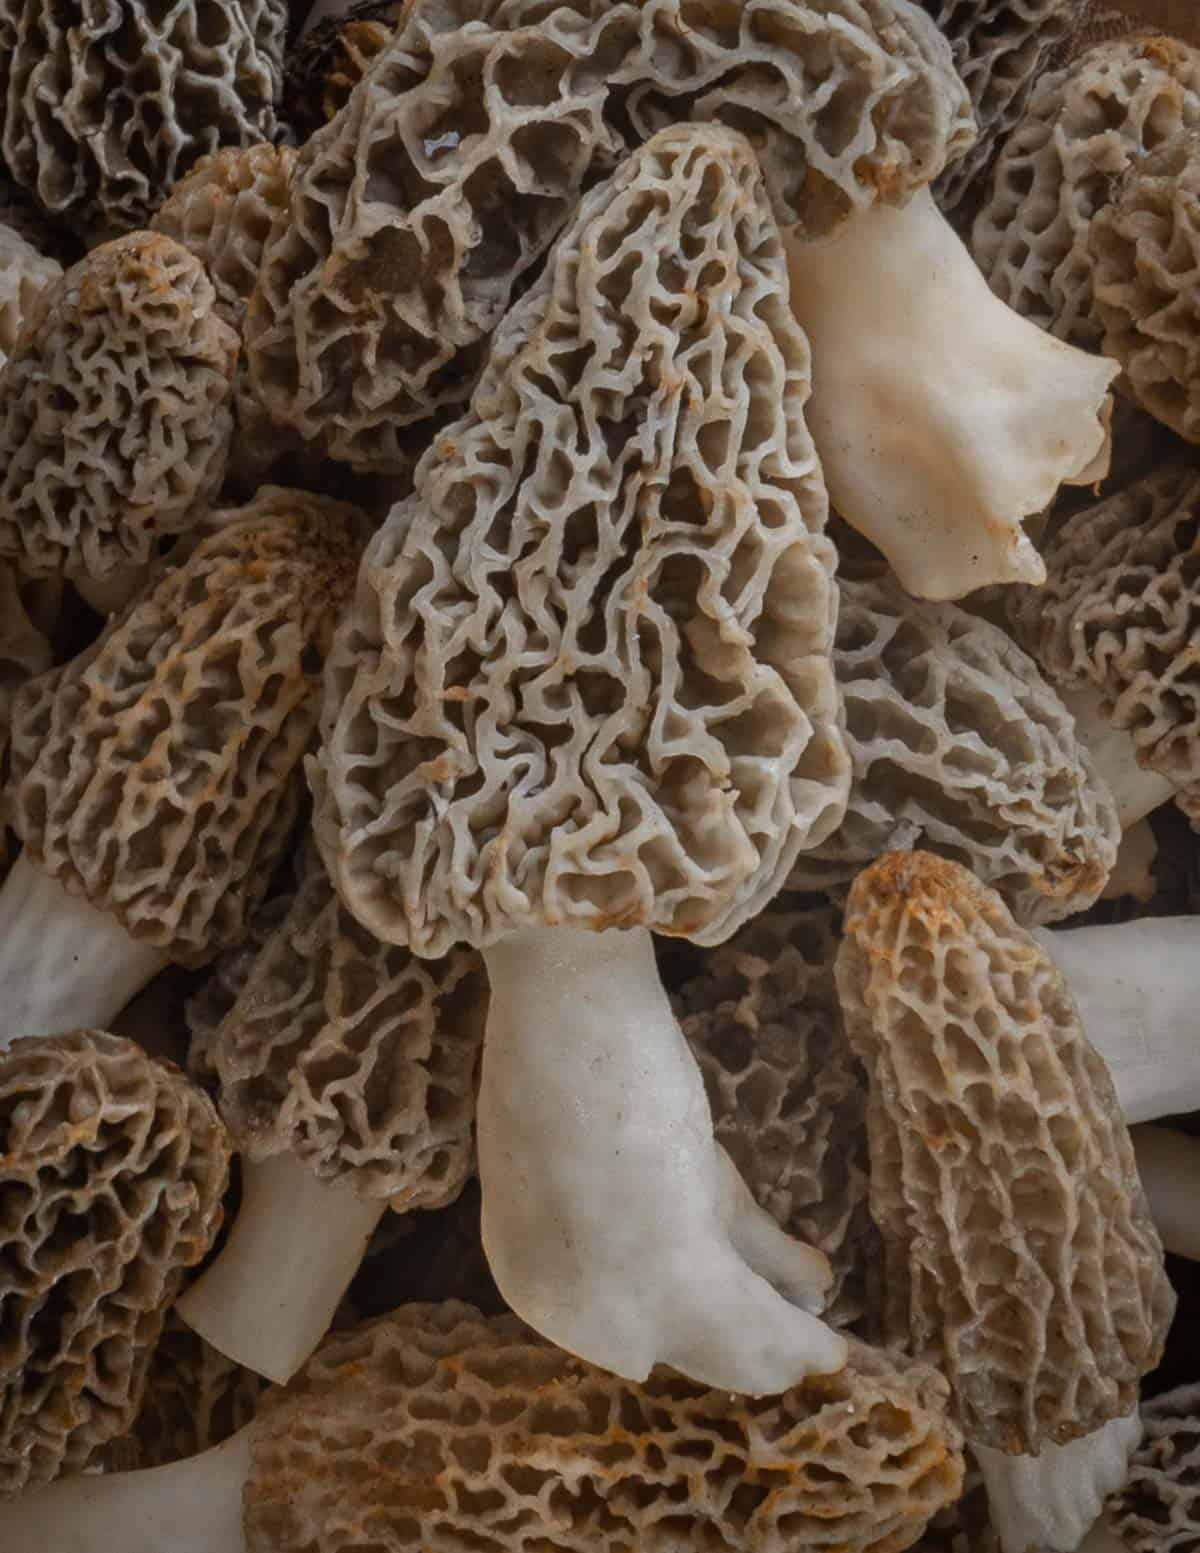 A close up image of many fresh gucchi mushrooms or morels.